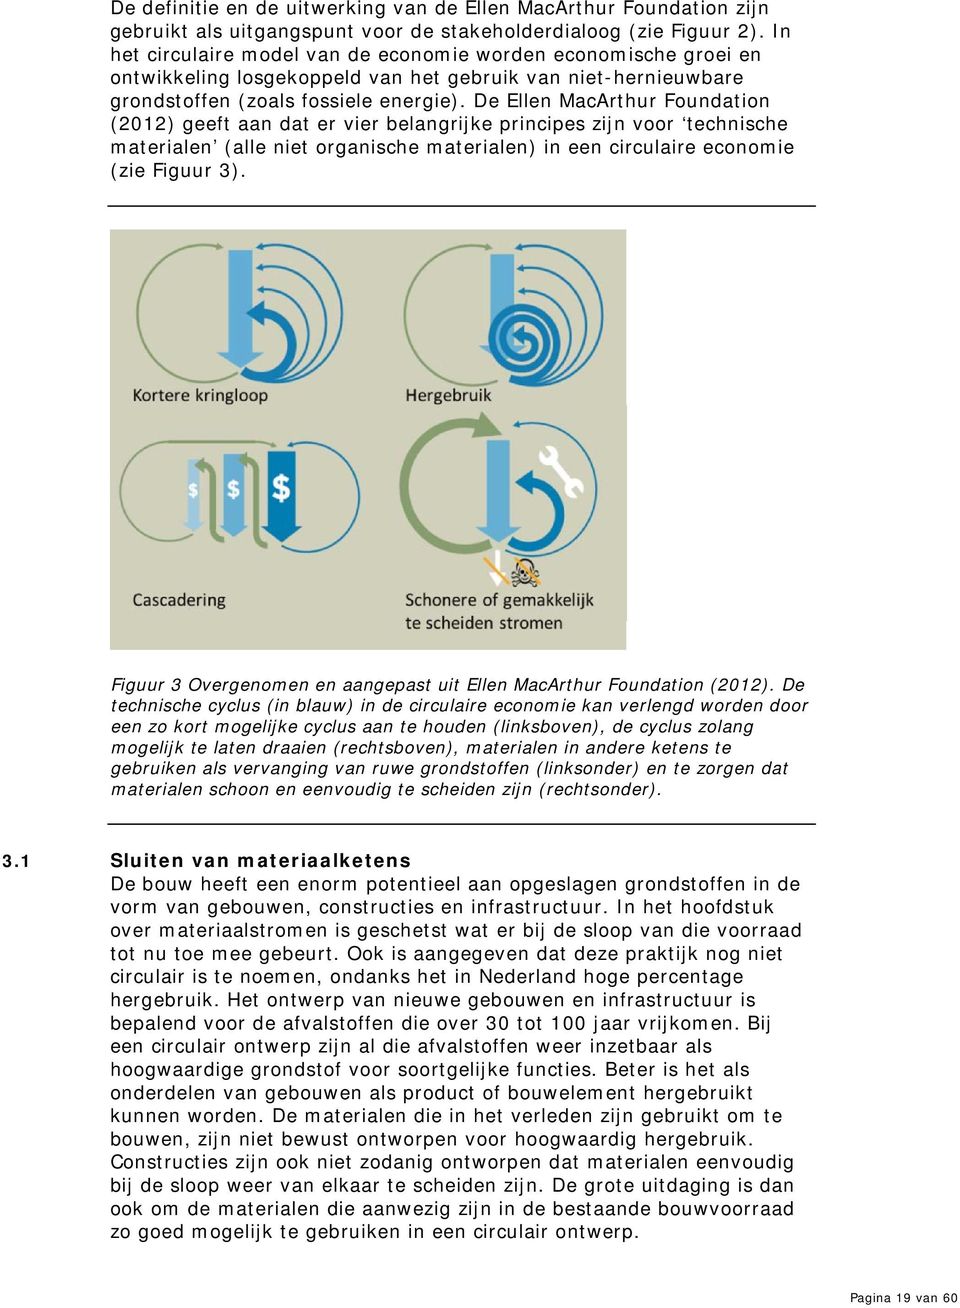 De Ellen MacArthur Foundation (2012) geeft aan dat er vier belangrijke principes zijn voor technische materialen (alle niet organische materialen) in een circulaire economie (zie Figuur 3).